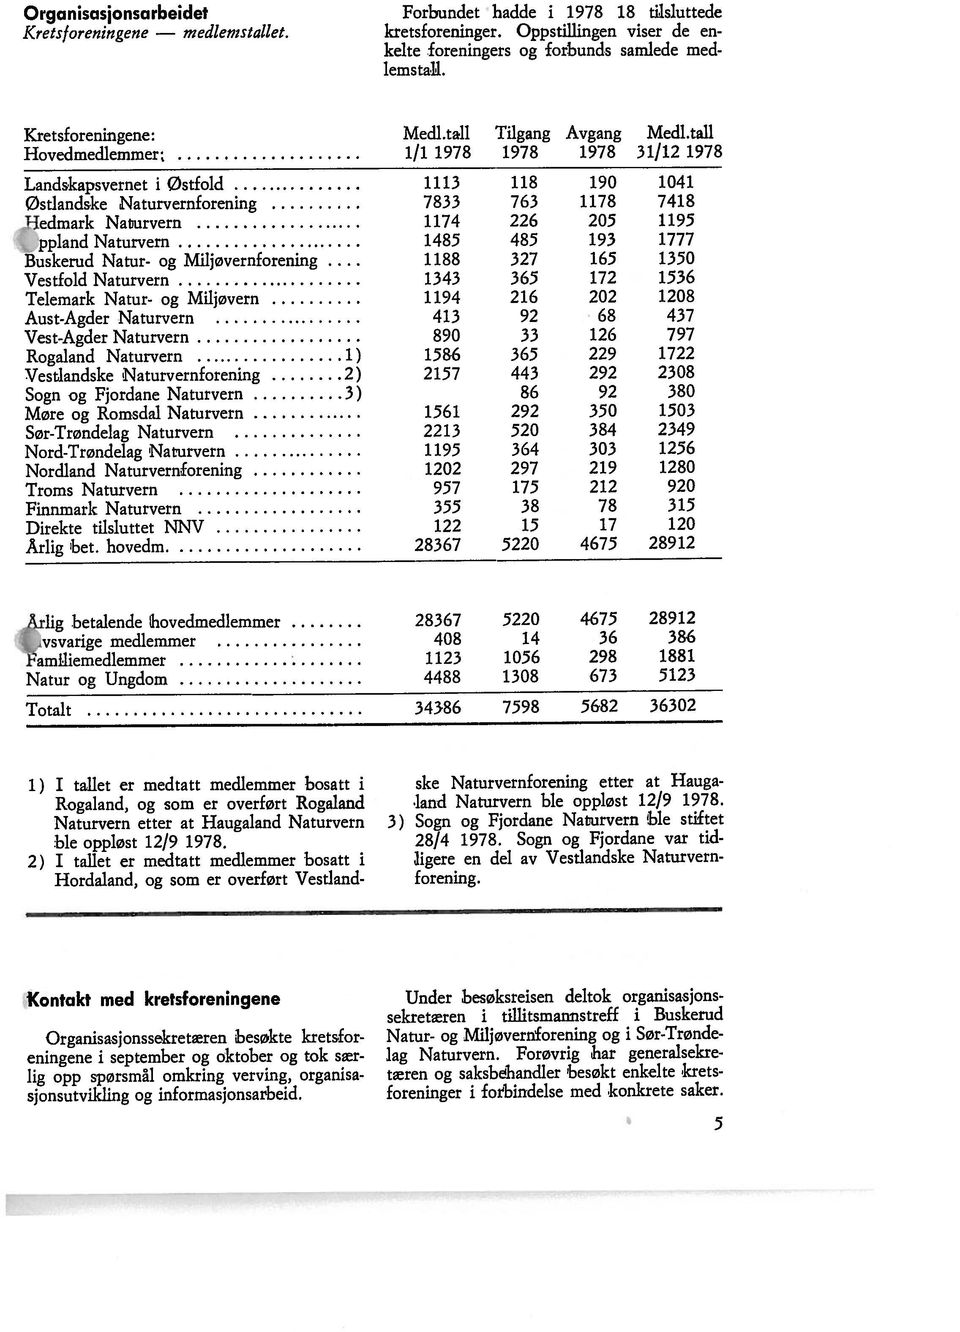 Organkasjonsarbeidet Forbundet hadde i 1978 18 tilsluttede Kontakt med kretsforeningene Nord-Trøndelag Naturvern 1195 364 303 1256 Møre og Romsdal Naturvern 1561 292 350 1503 Sogn og Fjordane